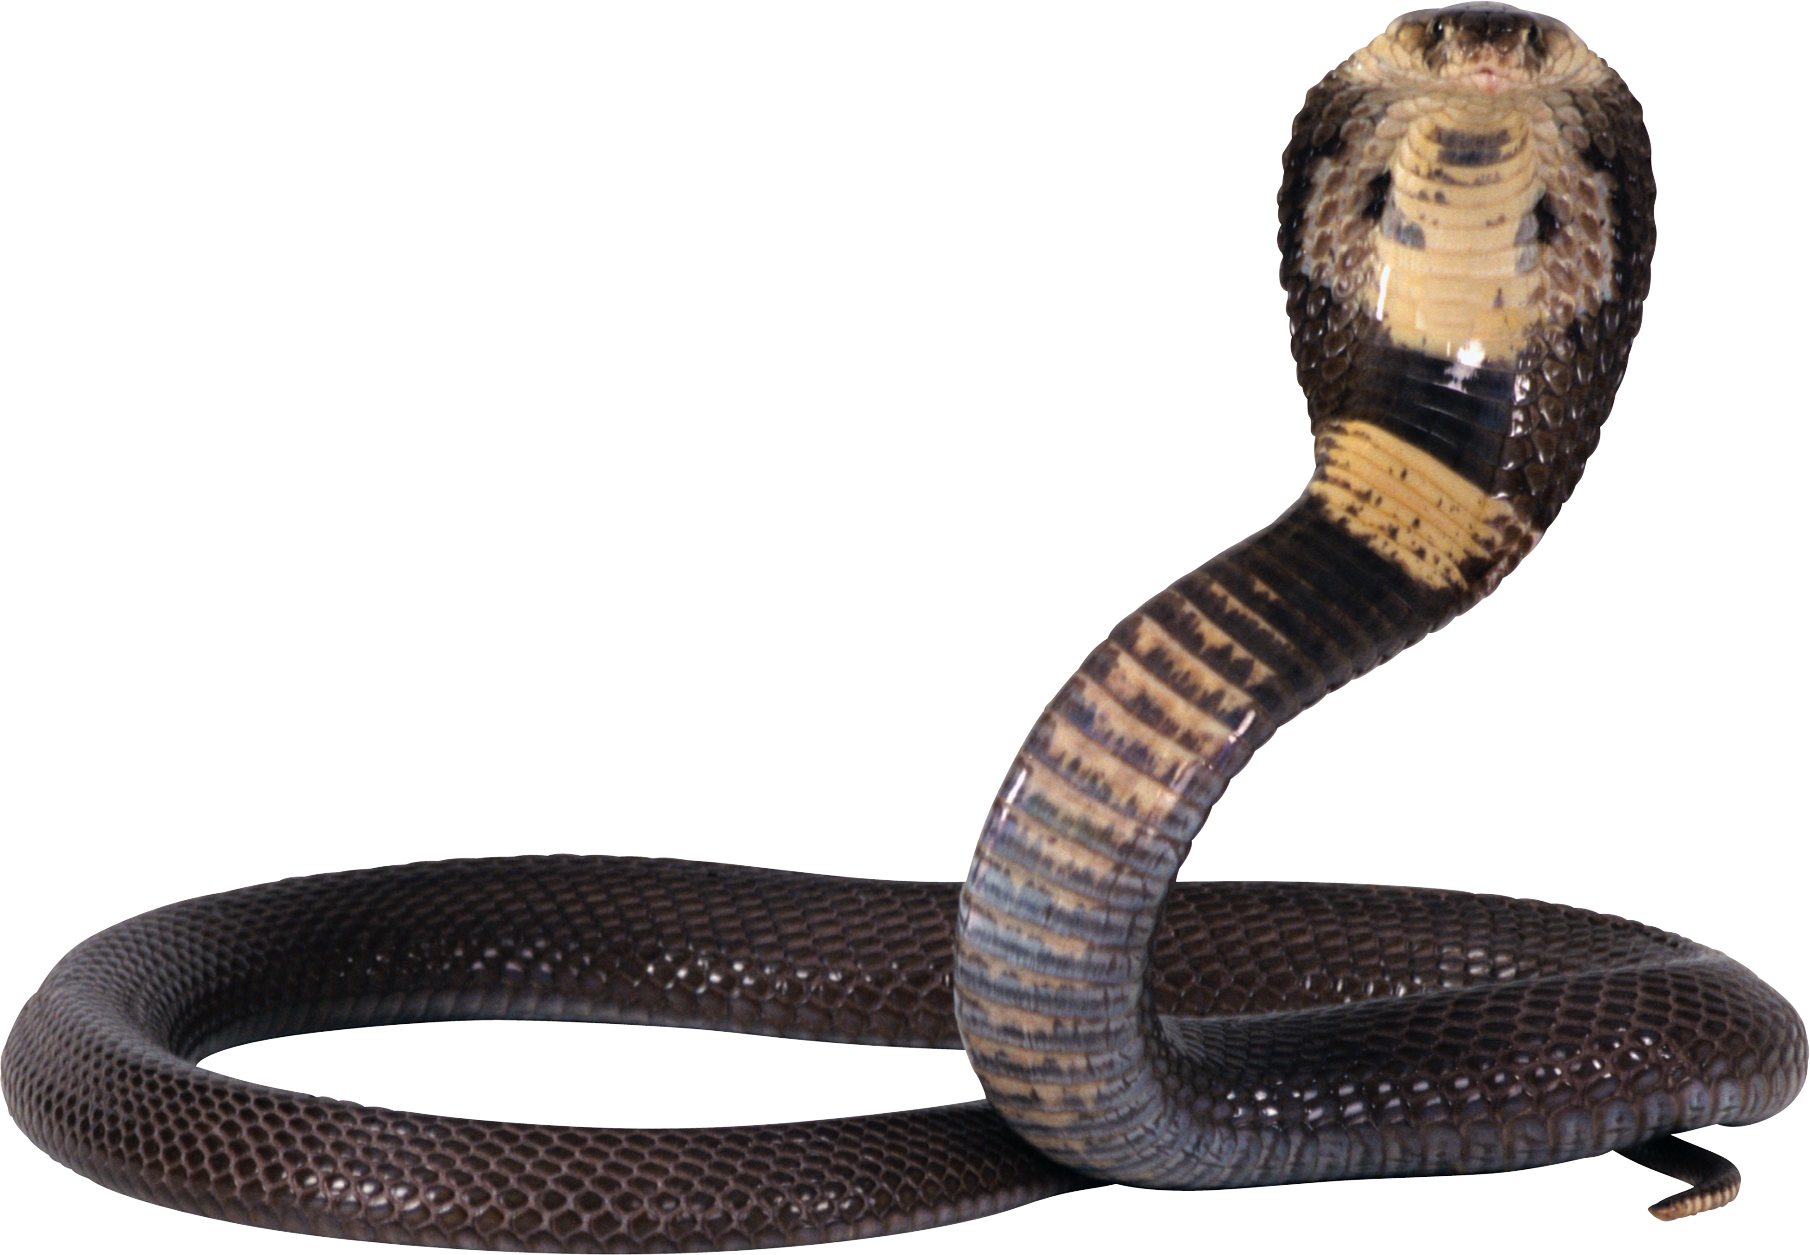 Cobra Snake PNG File